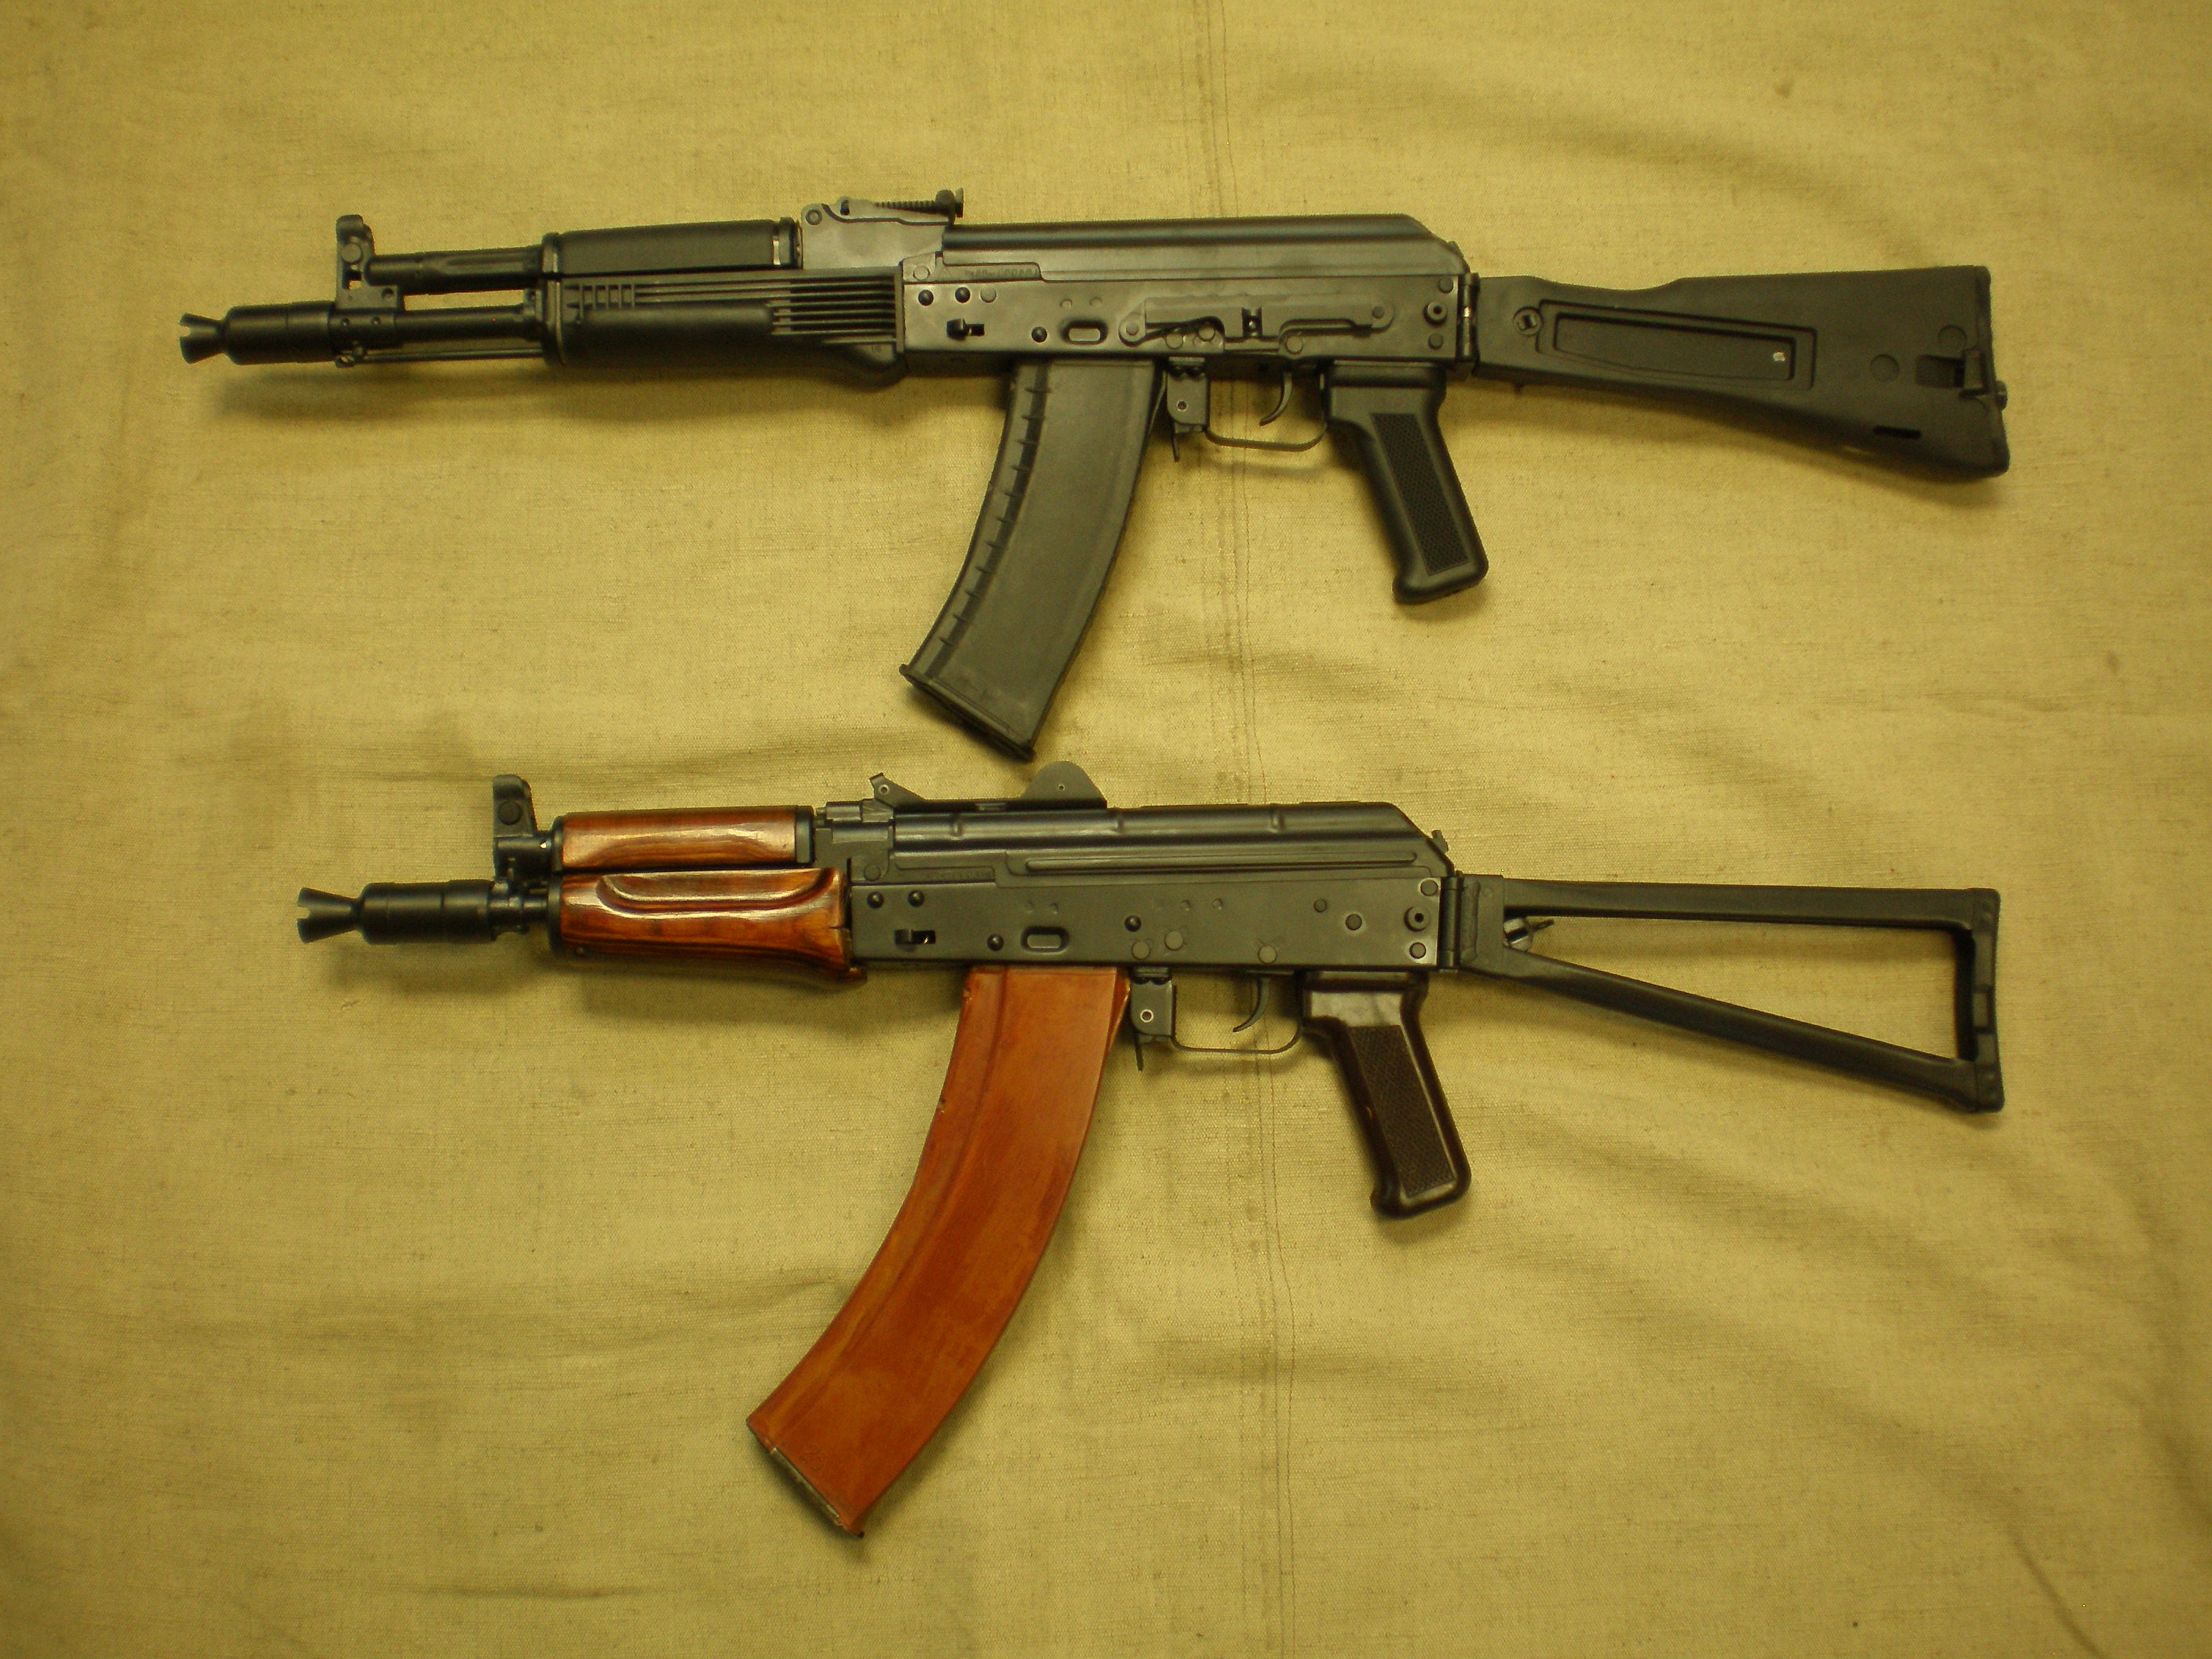 AKS-74U or AK 105